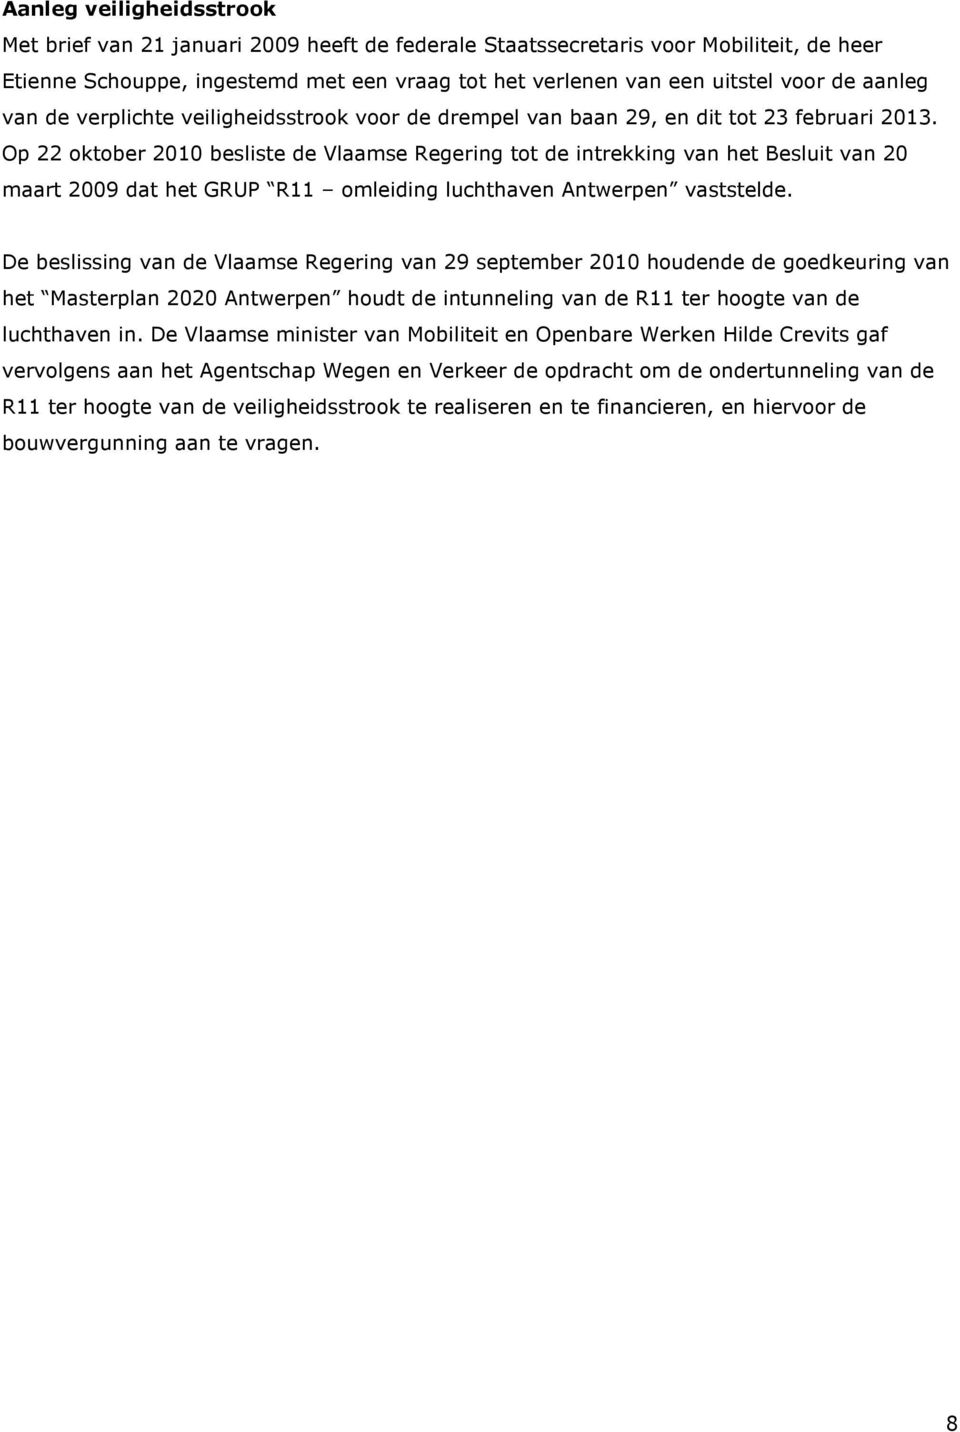 Op 22 oktober 2010 besliste de Vlaamse Regering tot de intrekking van het Besluit van 20 maart 2009 dat het GRUP R11 omleiding luchthaven Antwerpen vaststelde.